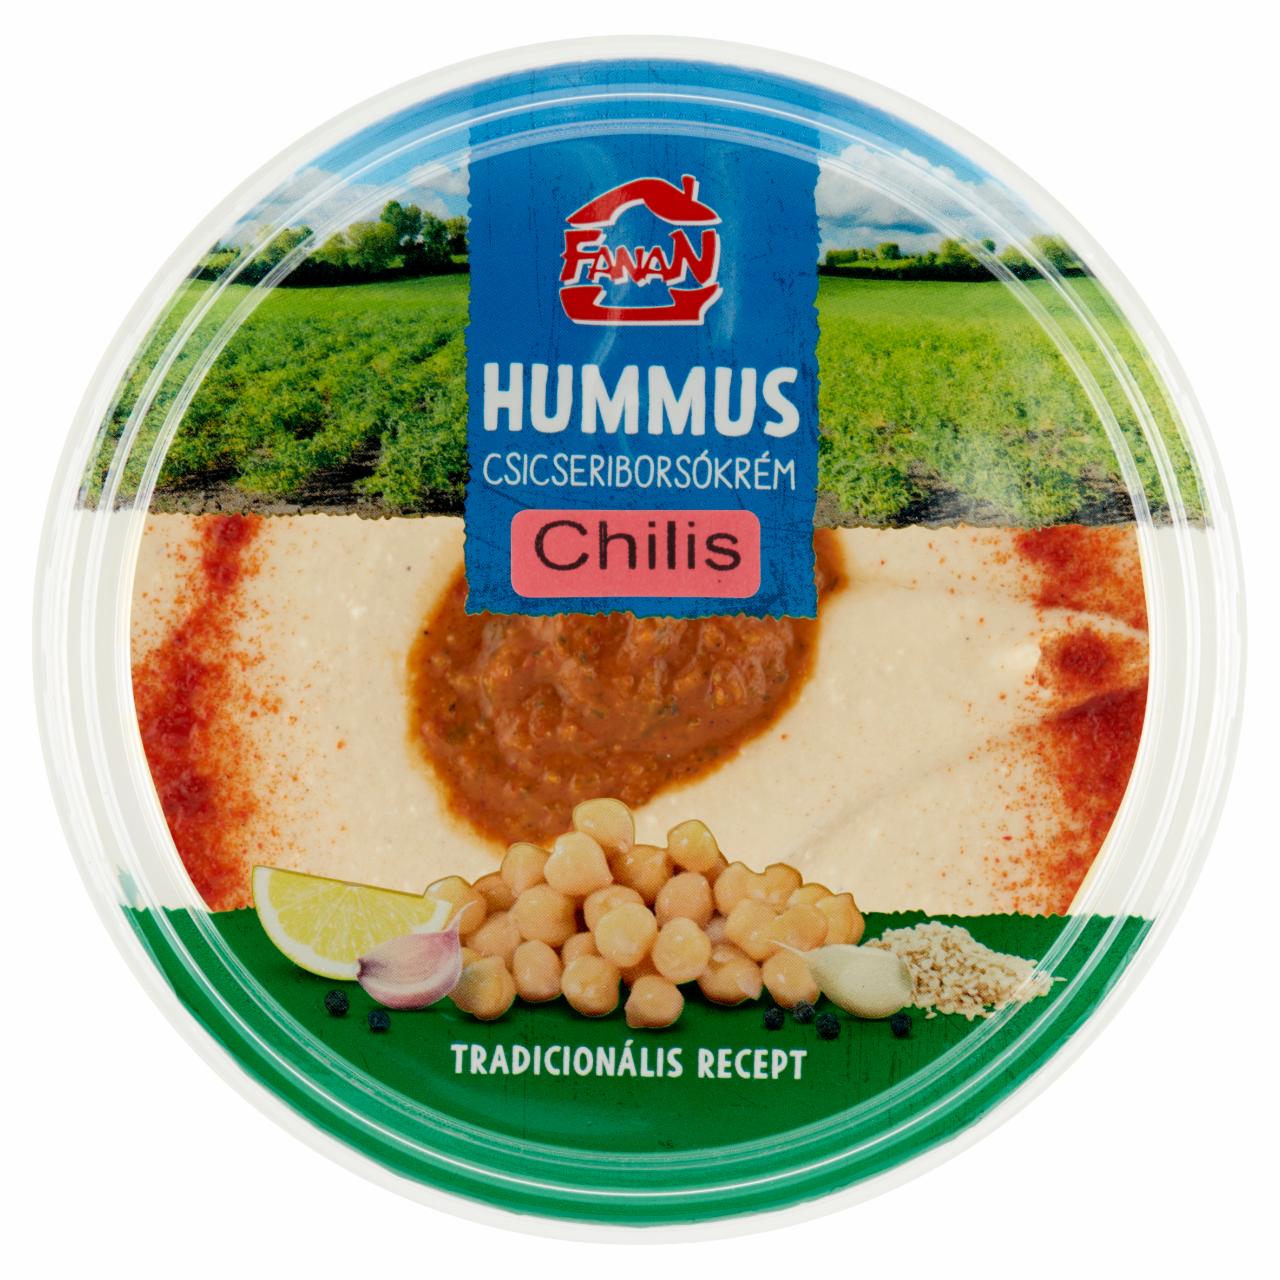 Képek - Fanan hummus chilis csicseriborsó krém 250 g